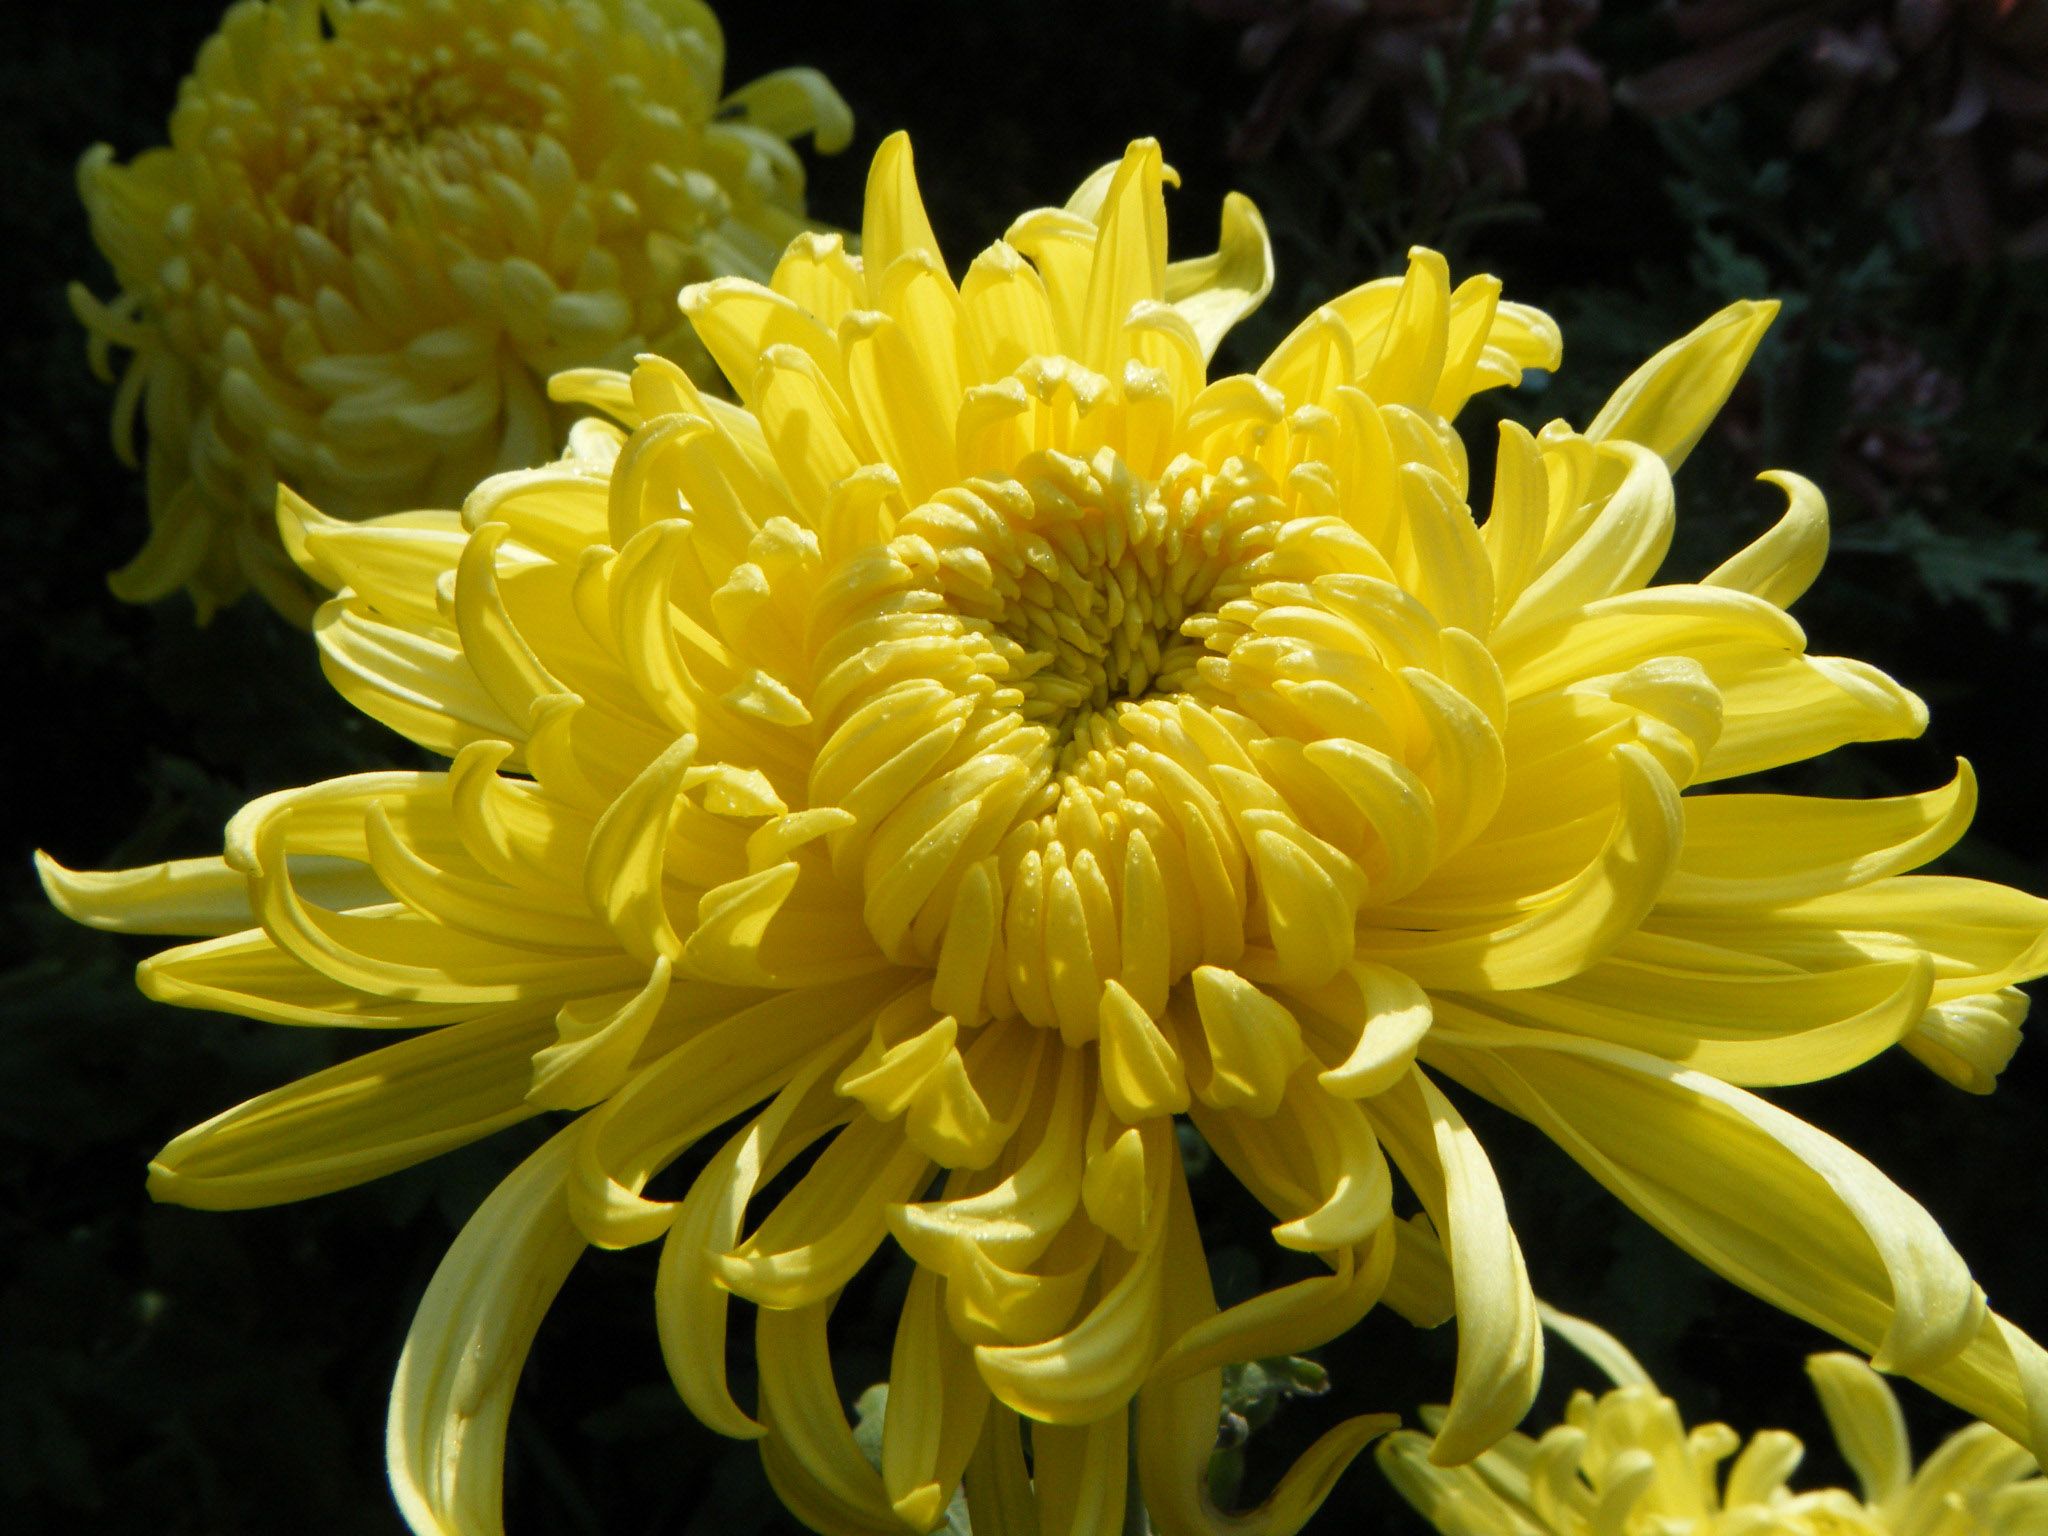 Хризантема крупноцветковая описание и фото